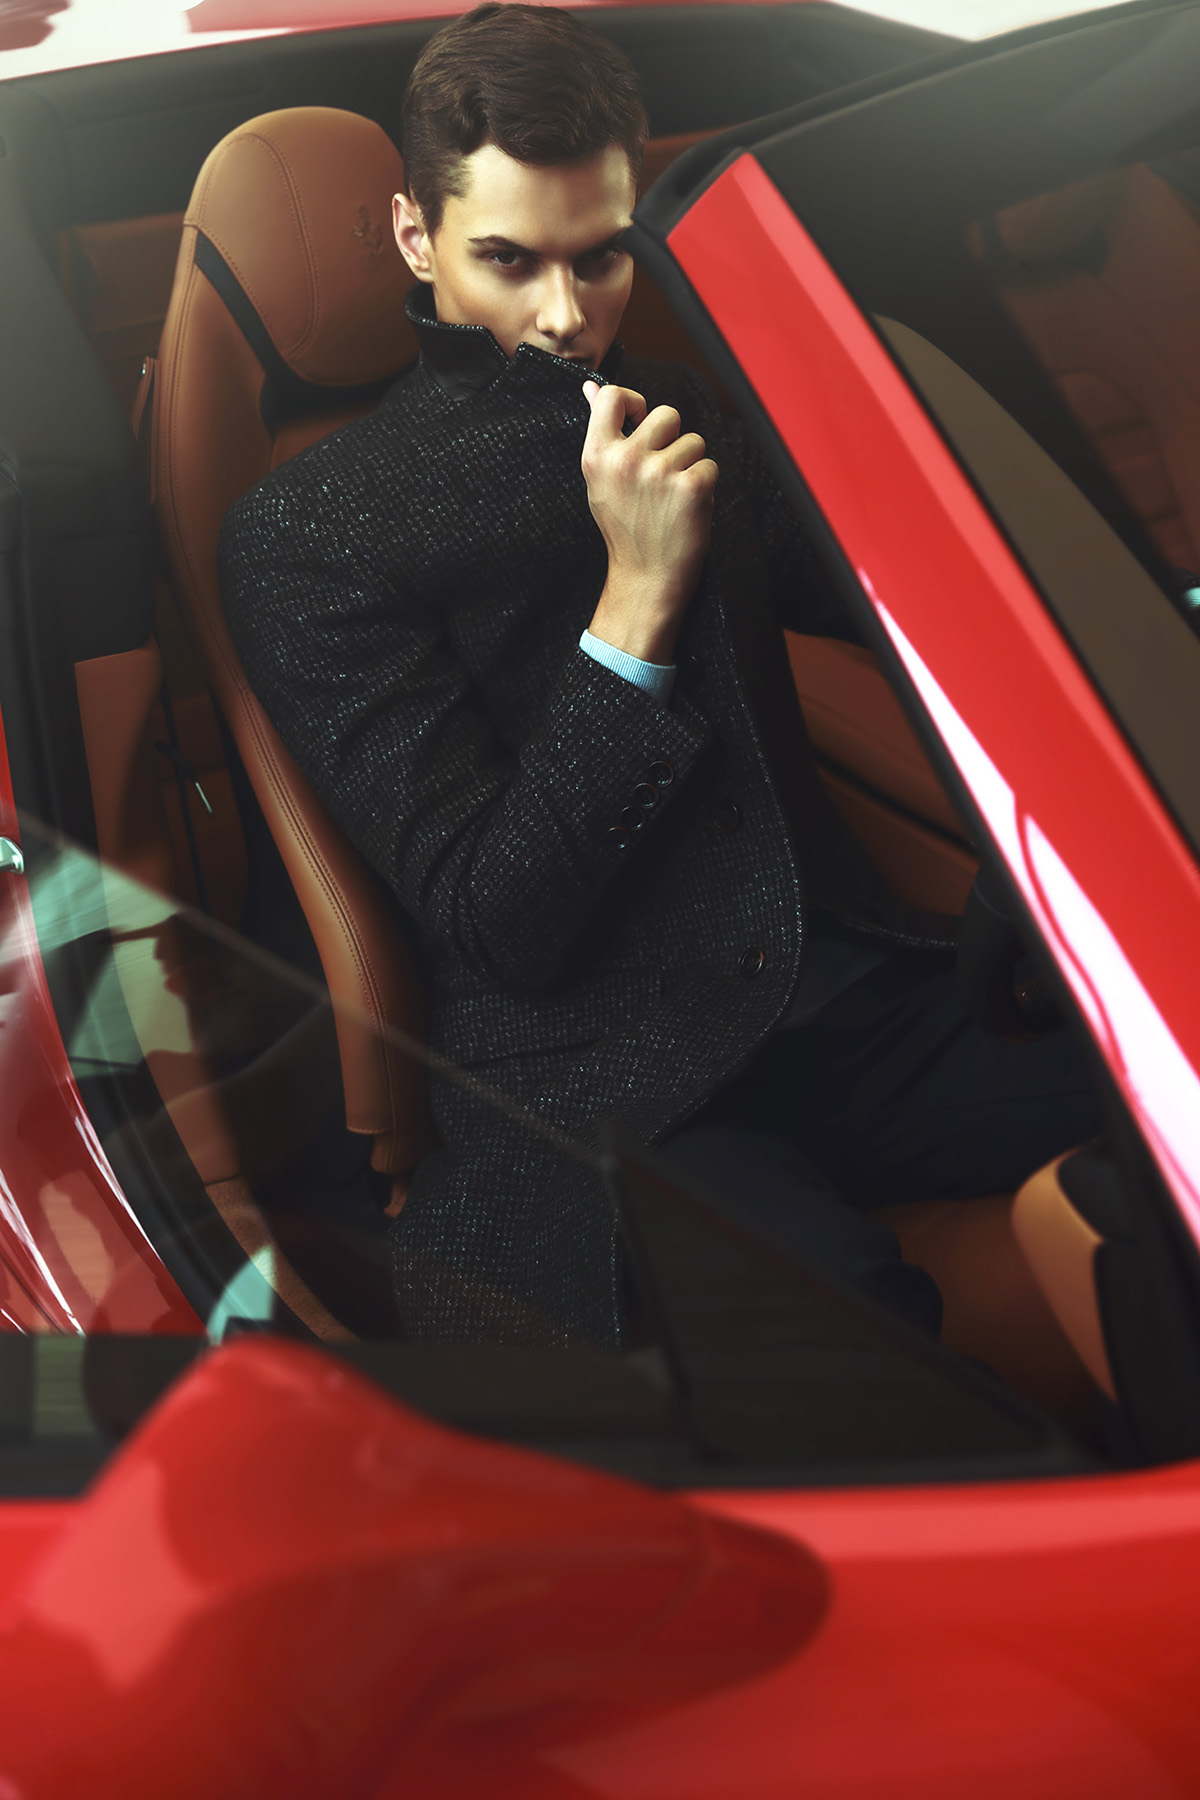 Fashion  men suit AUGUSTMAN magazine fashion spread automotive   Cars car